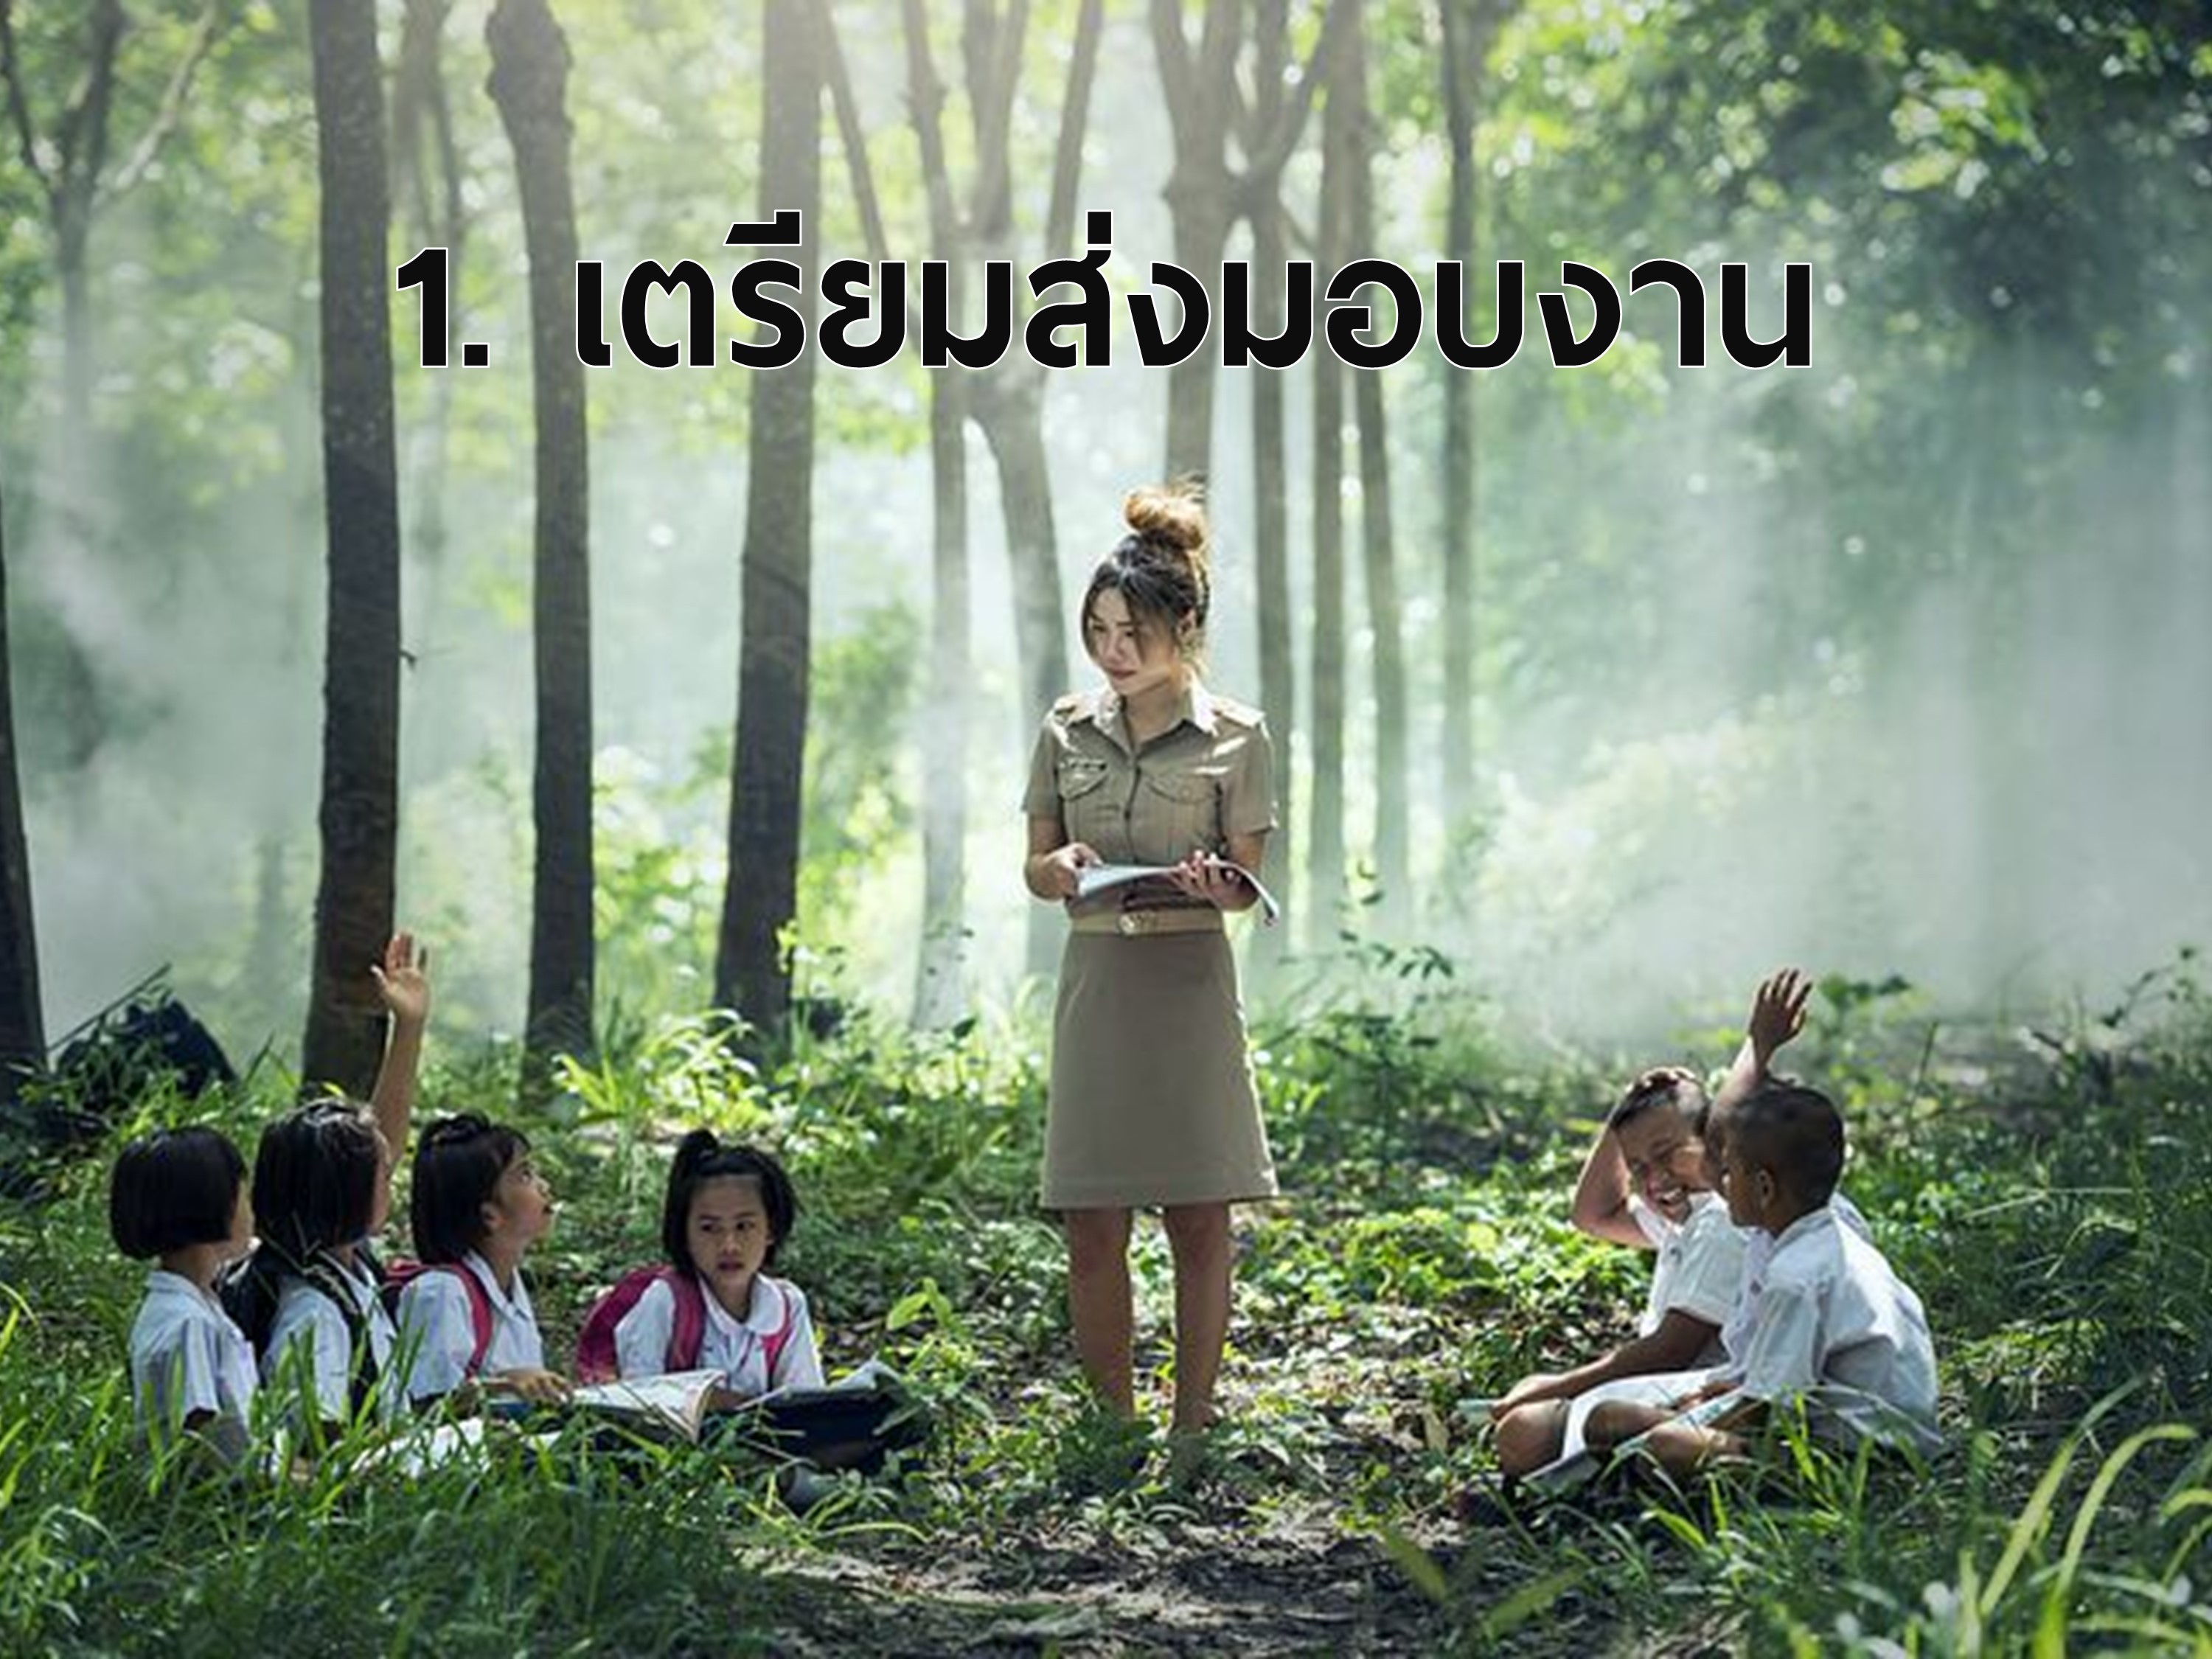 ภาพโดย : https://pixabay.com/photos/learning-school-outdoor-asia-book-1782430/